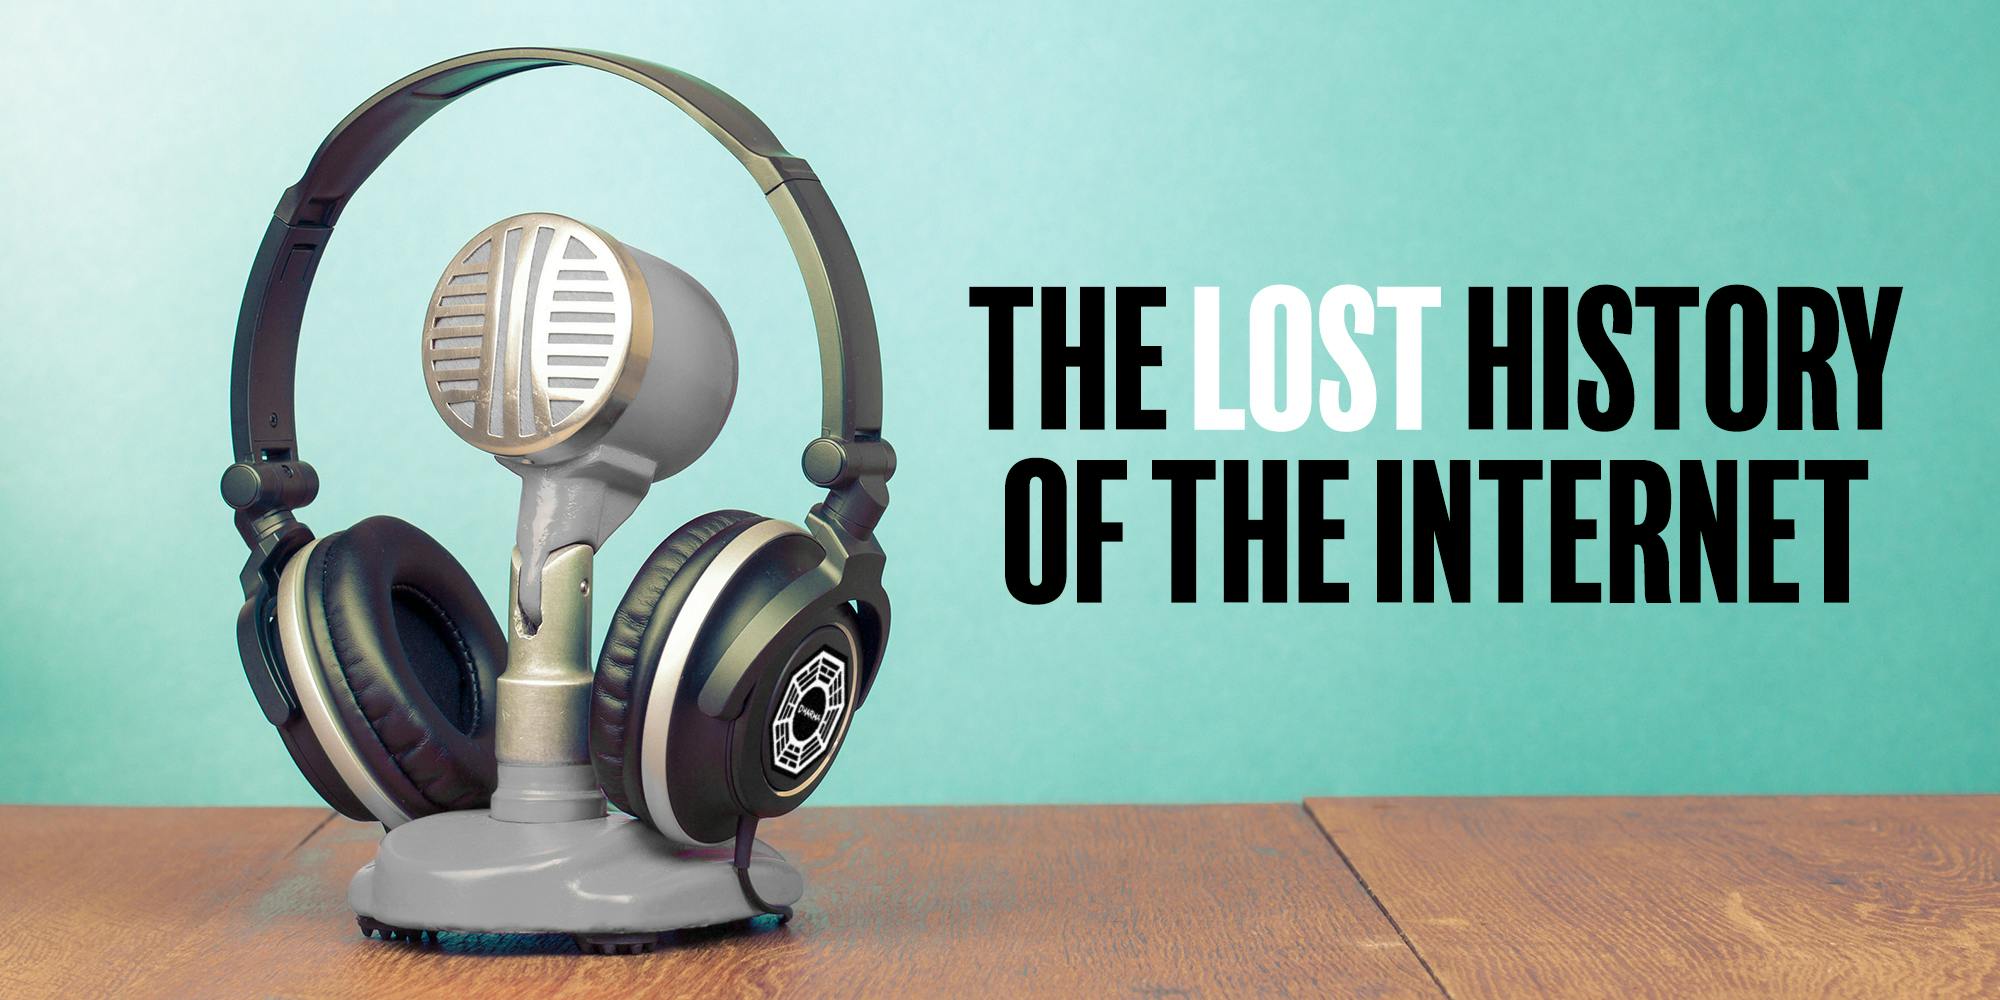 侧面带有达摩倡议标志的耳机，安装在电容话筒支架上，标题为“失去的互联网历史”